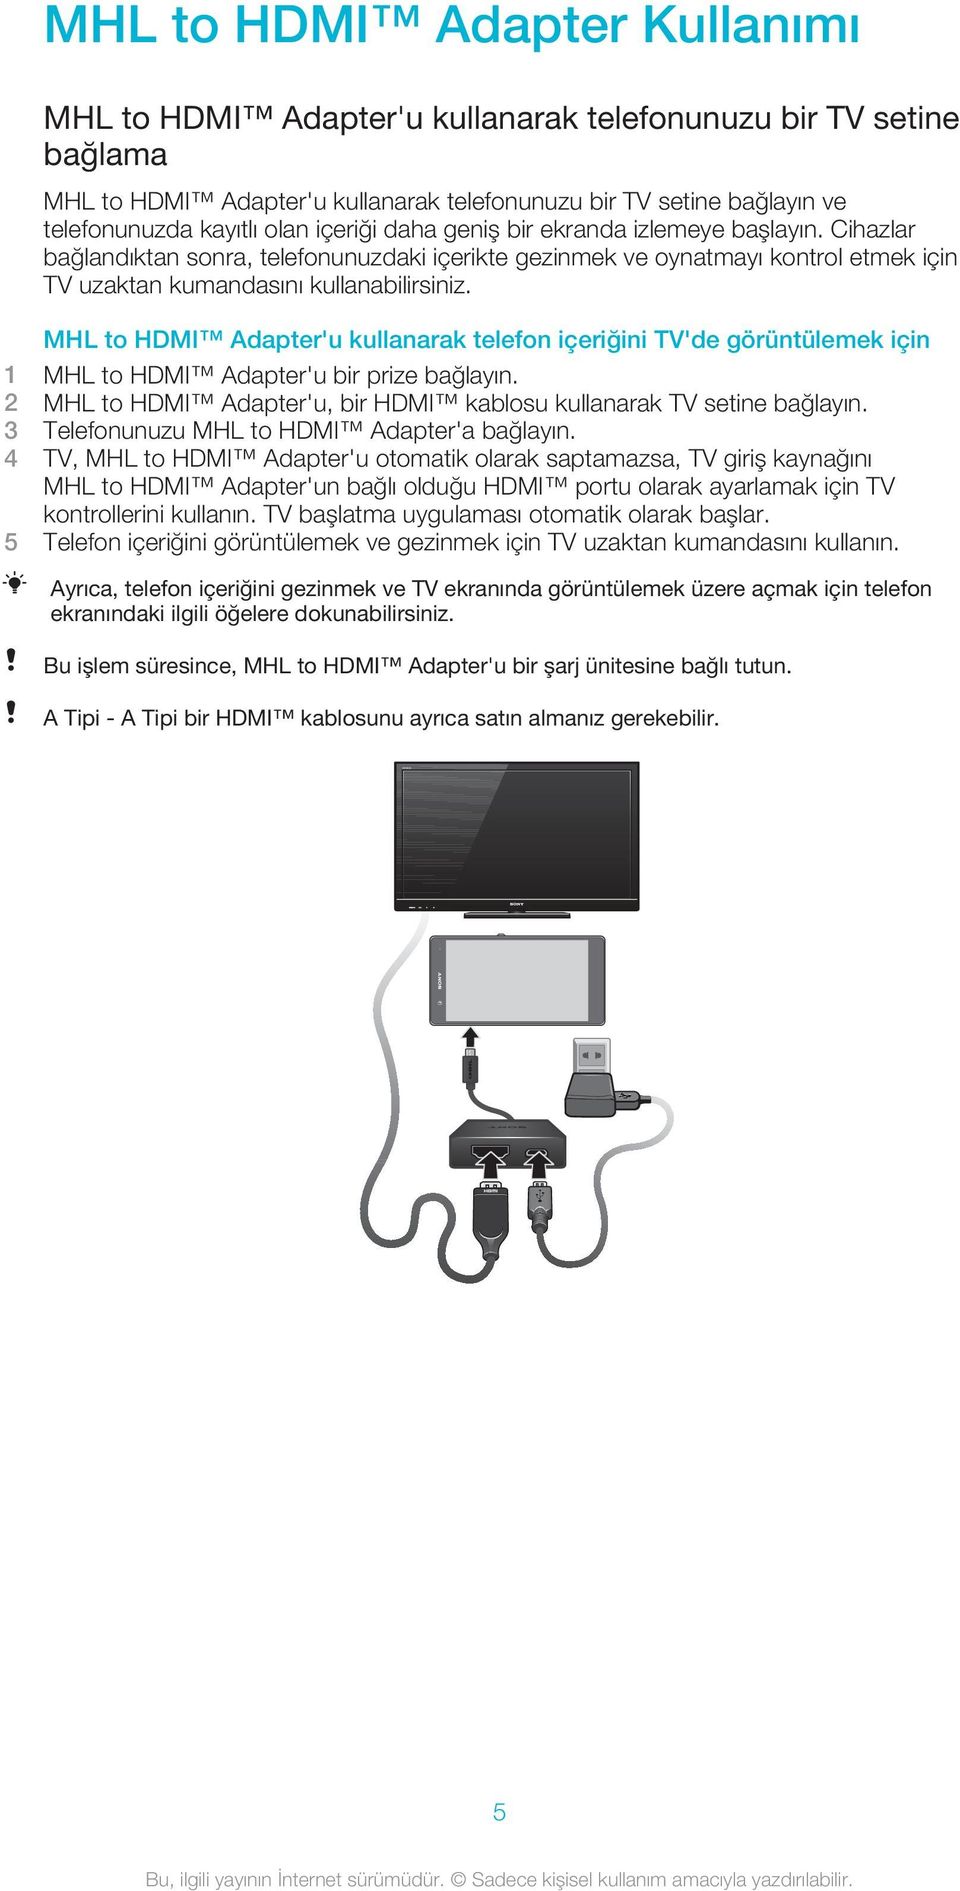 MHL to HDMI Adapter'u kullanarak telefon içeriğini TV'de görüntülemek için 1 MHL to HDMI Adapter'u bir prize bağlayın. 2 MHL to HDMI Adapter'u, bir HDMI kablosu kullanarak TV setine bağlayın.